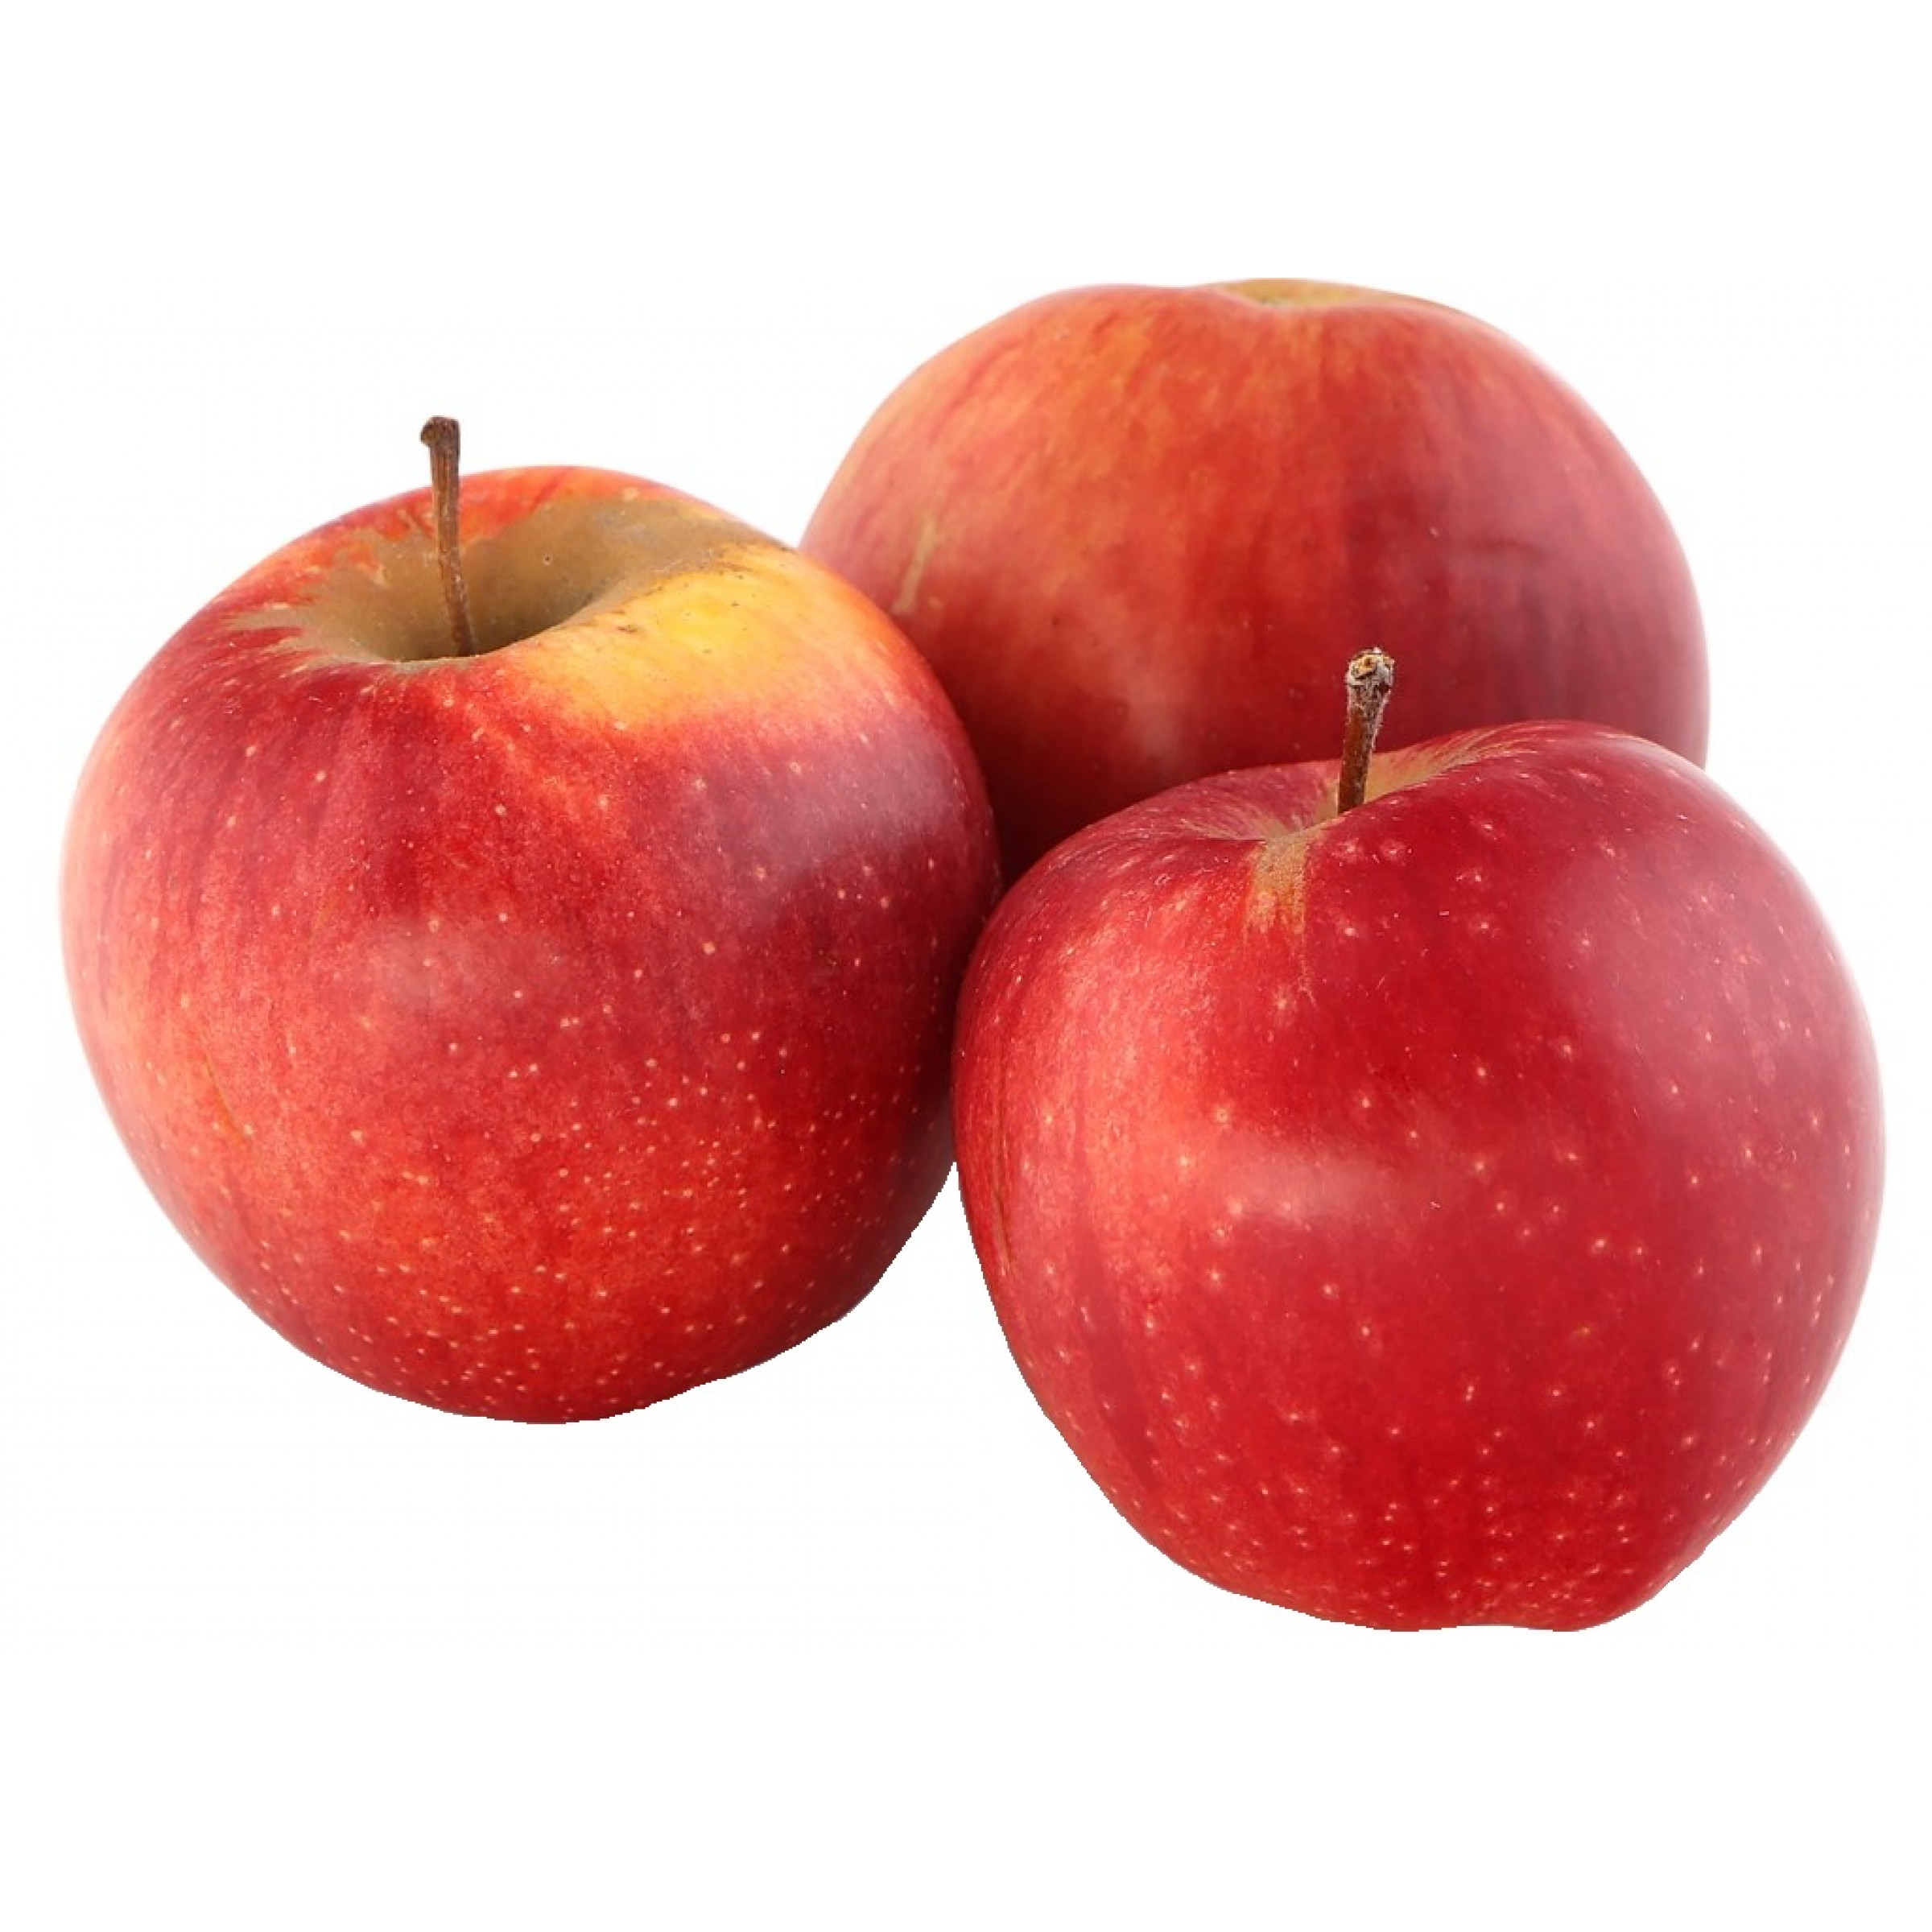 Красные яблоки Флорена весовые (средний вес 1200 г)